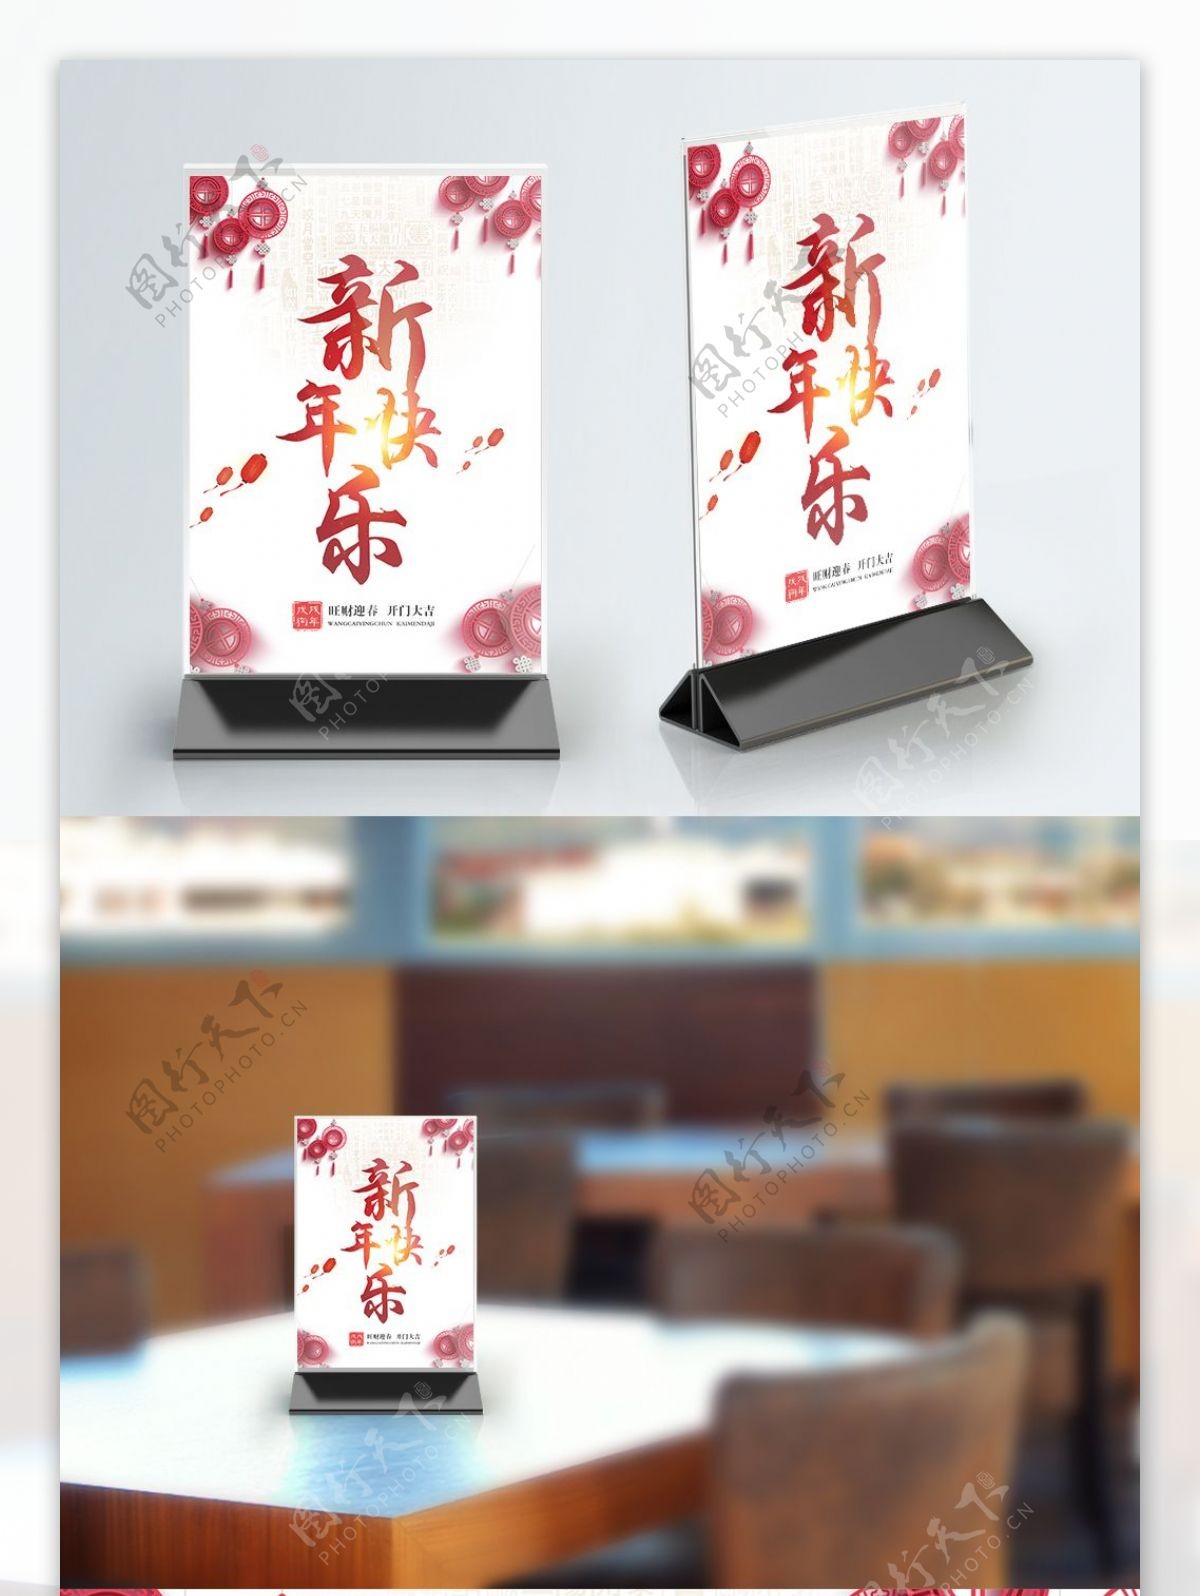 简约中国风新年快乐桌卡设计模板